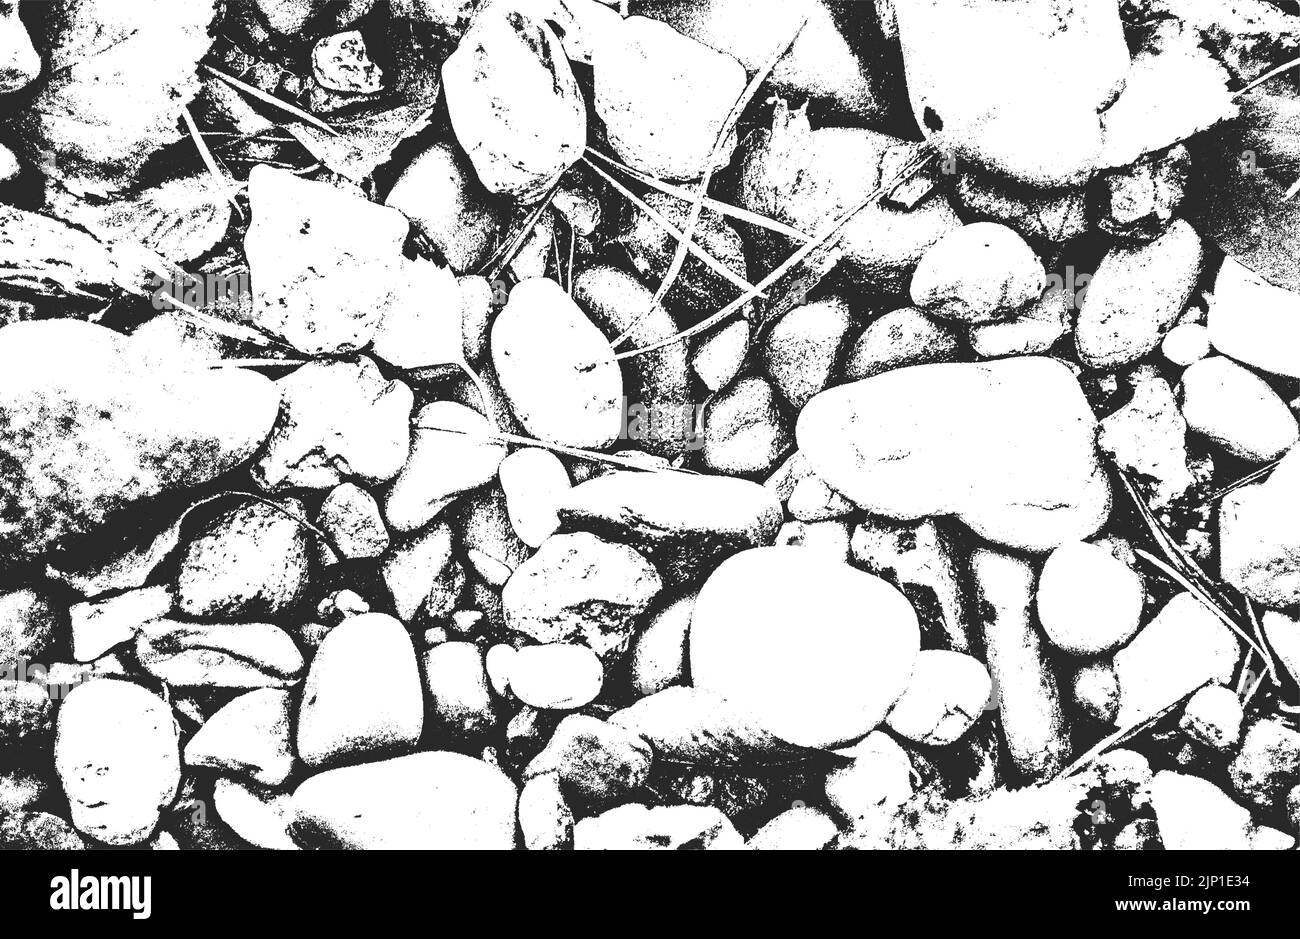 Textura de superposición de piedras, rocas, guijarros, macadam. Fondo grunge. Ilustración vectorial de semitonos abstracta Ilustración del Vector